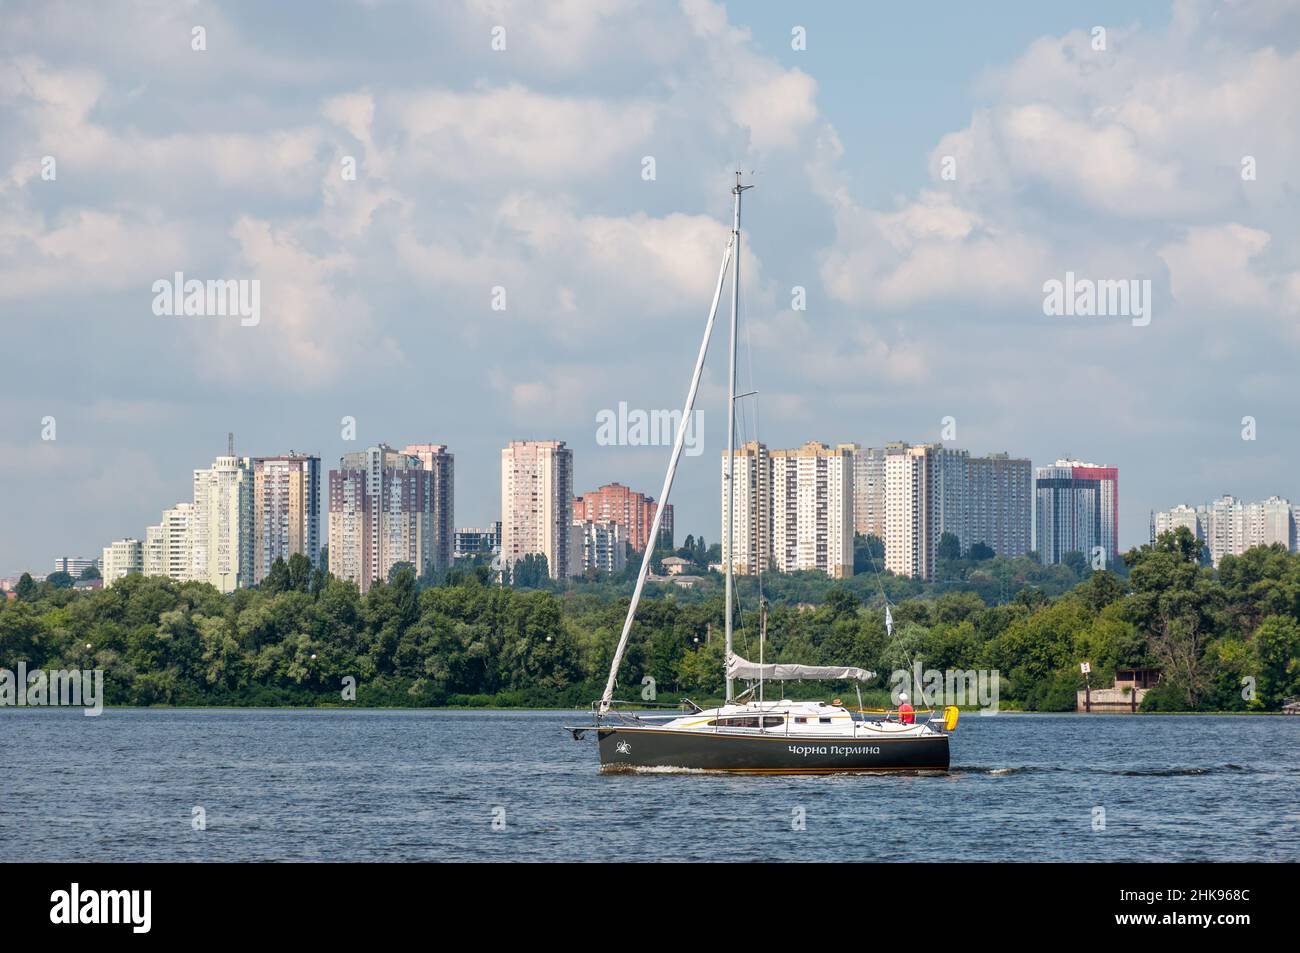 Kiev, Ucrania - 3 de julio de 2021: Yate Perla Negra navega a lo largo del río Dnipro con el telón de fondo de una zona residencial en Kiev, Ucrania. Foto de stock